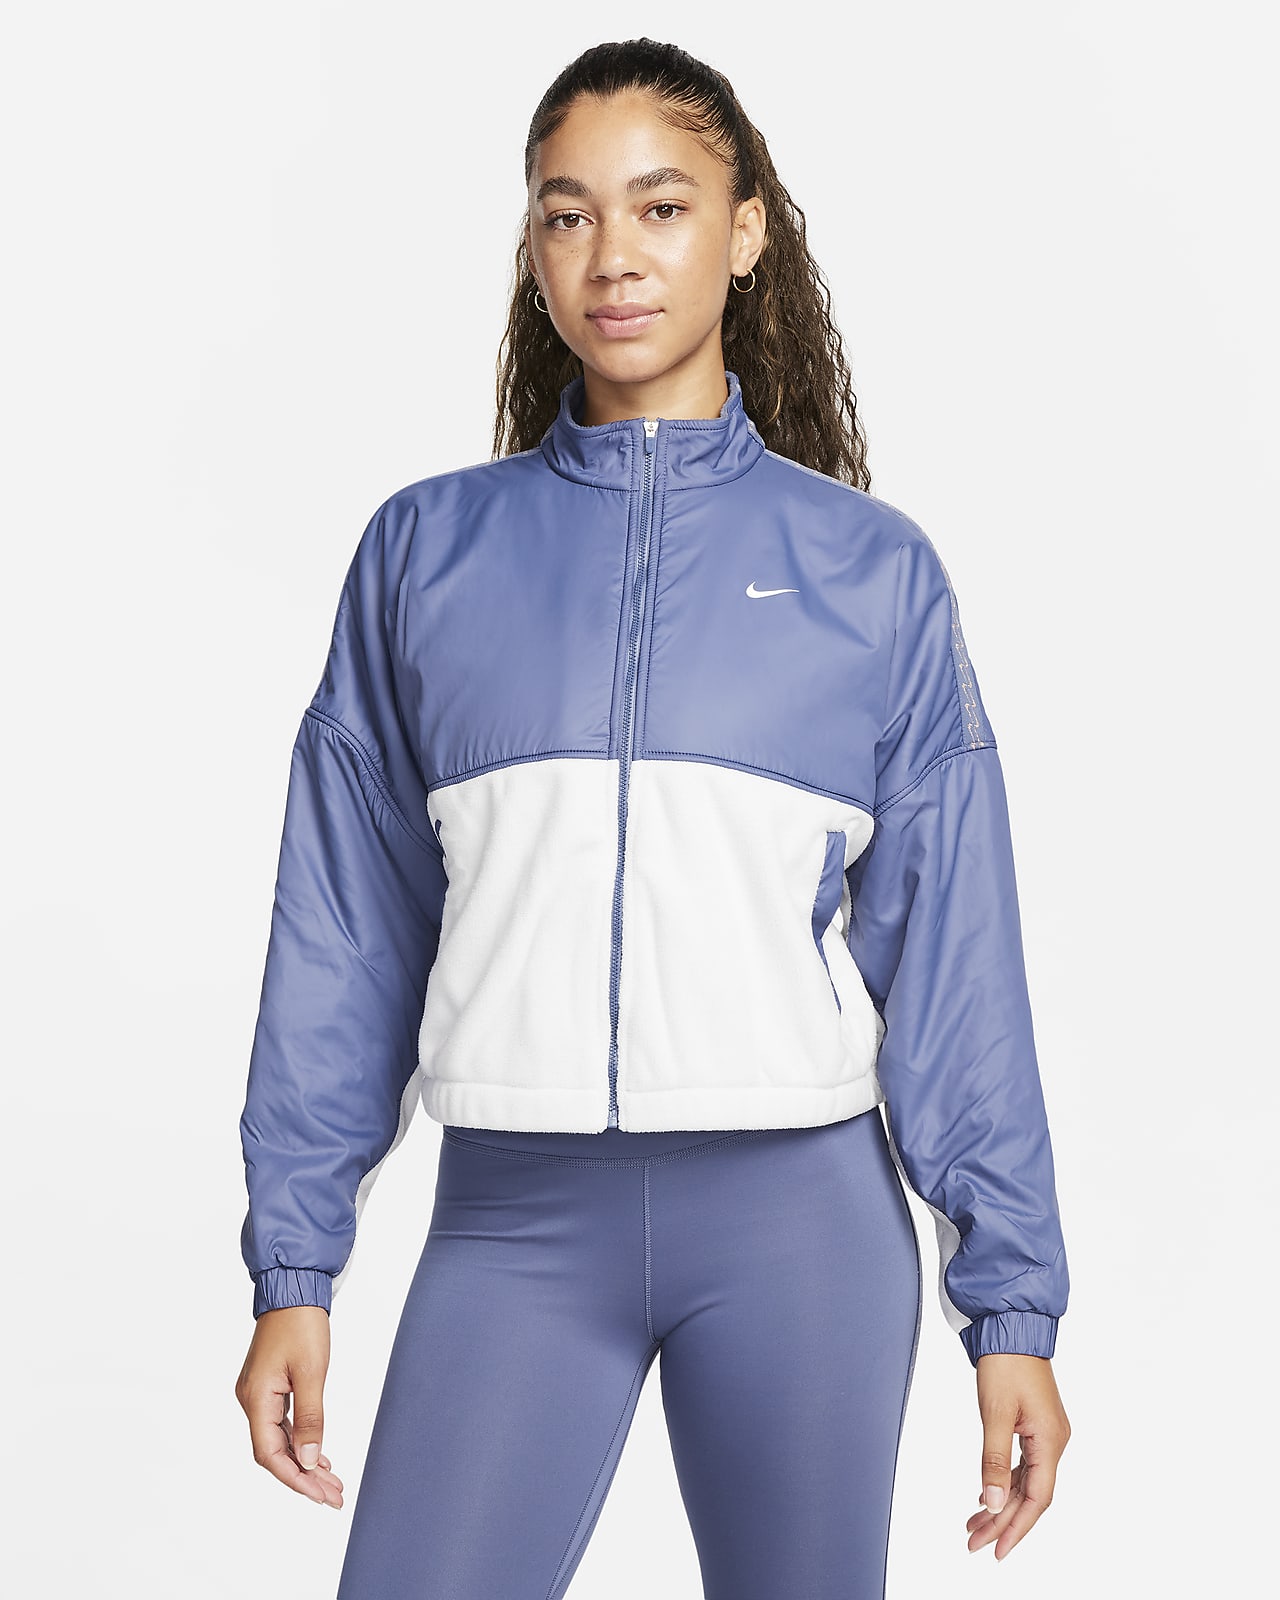 NEW Nike Women's Sportswear Synthetic Fill Shine Jacket Metallic Gold Size  M | eBay